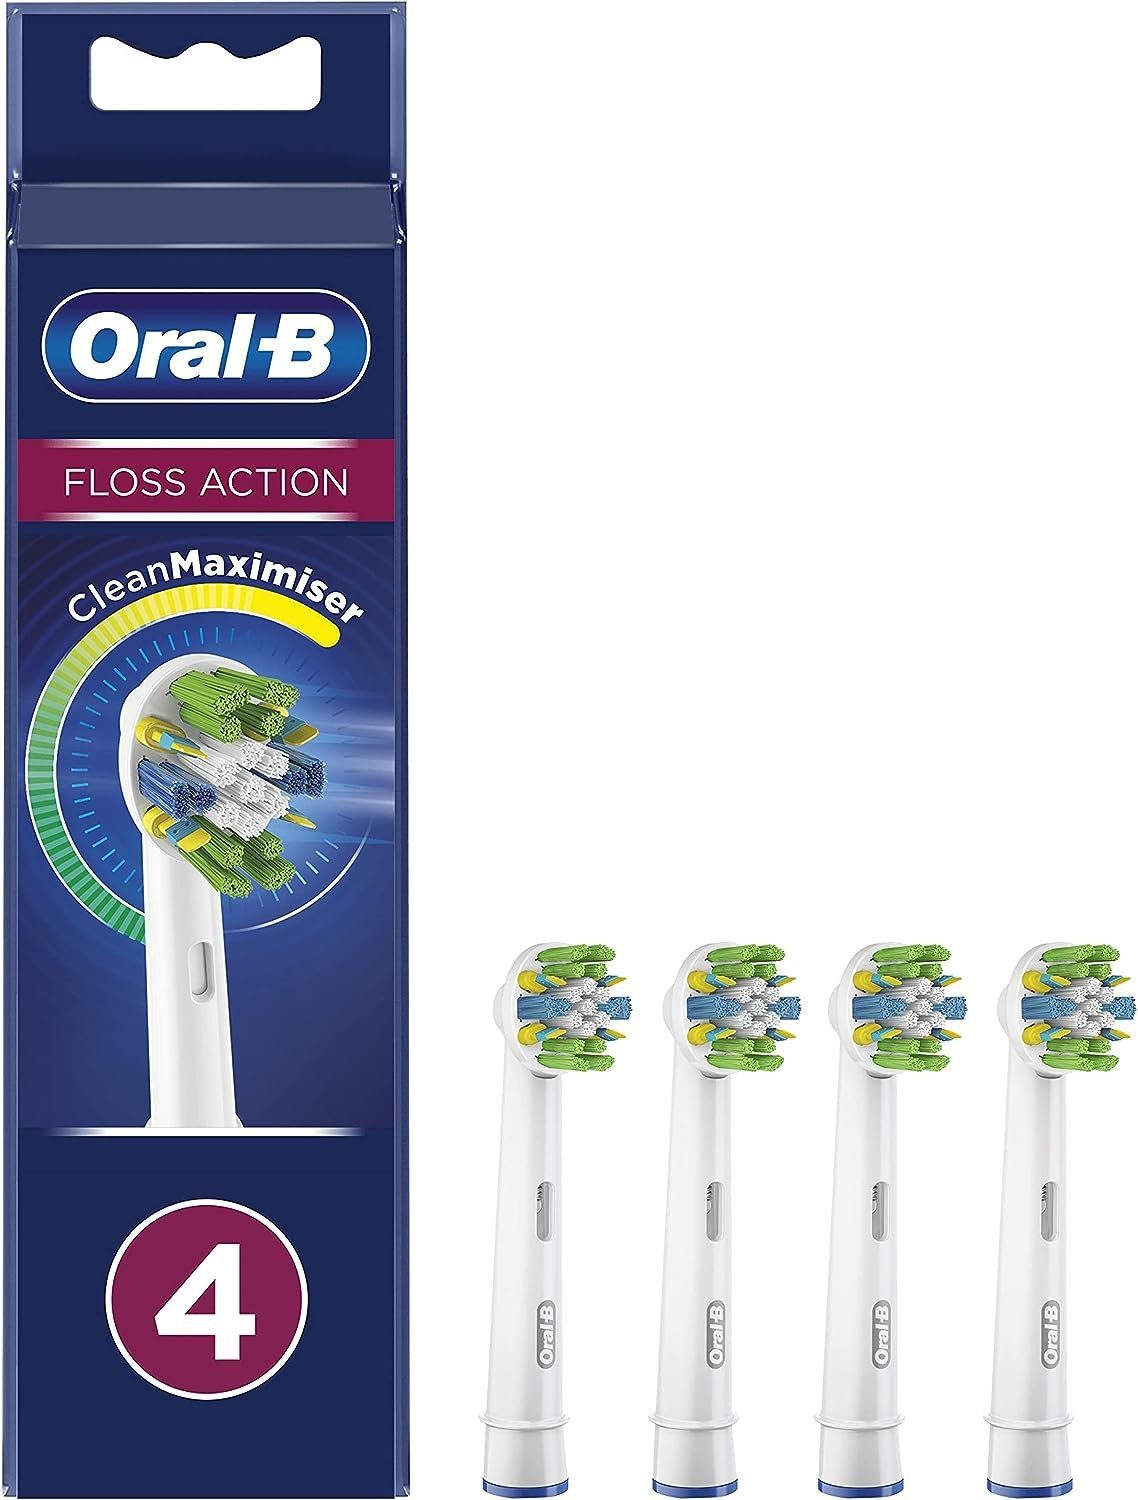 Oral-B Aufsteckbürsten Tiefenreinigung Floss Action - Clean Maximiser 12er Pack